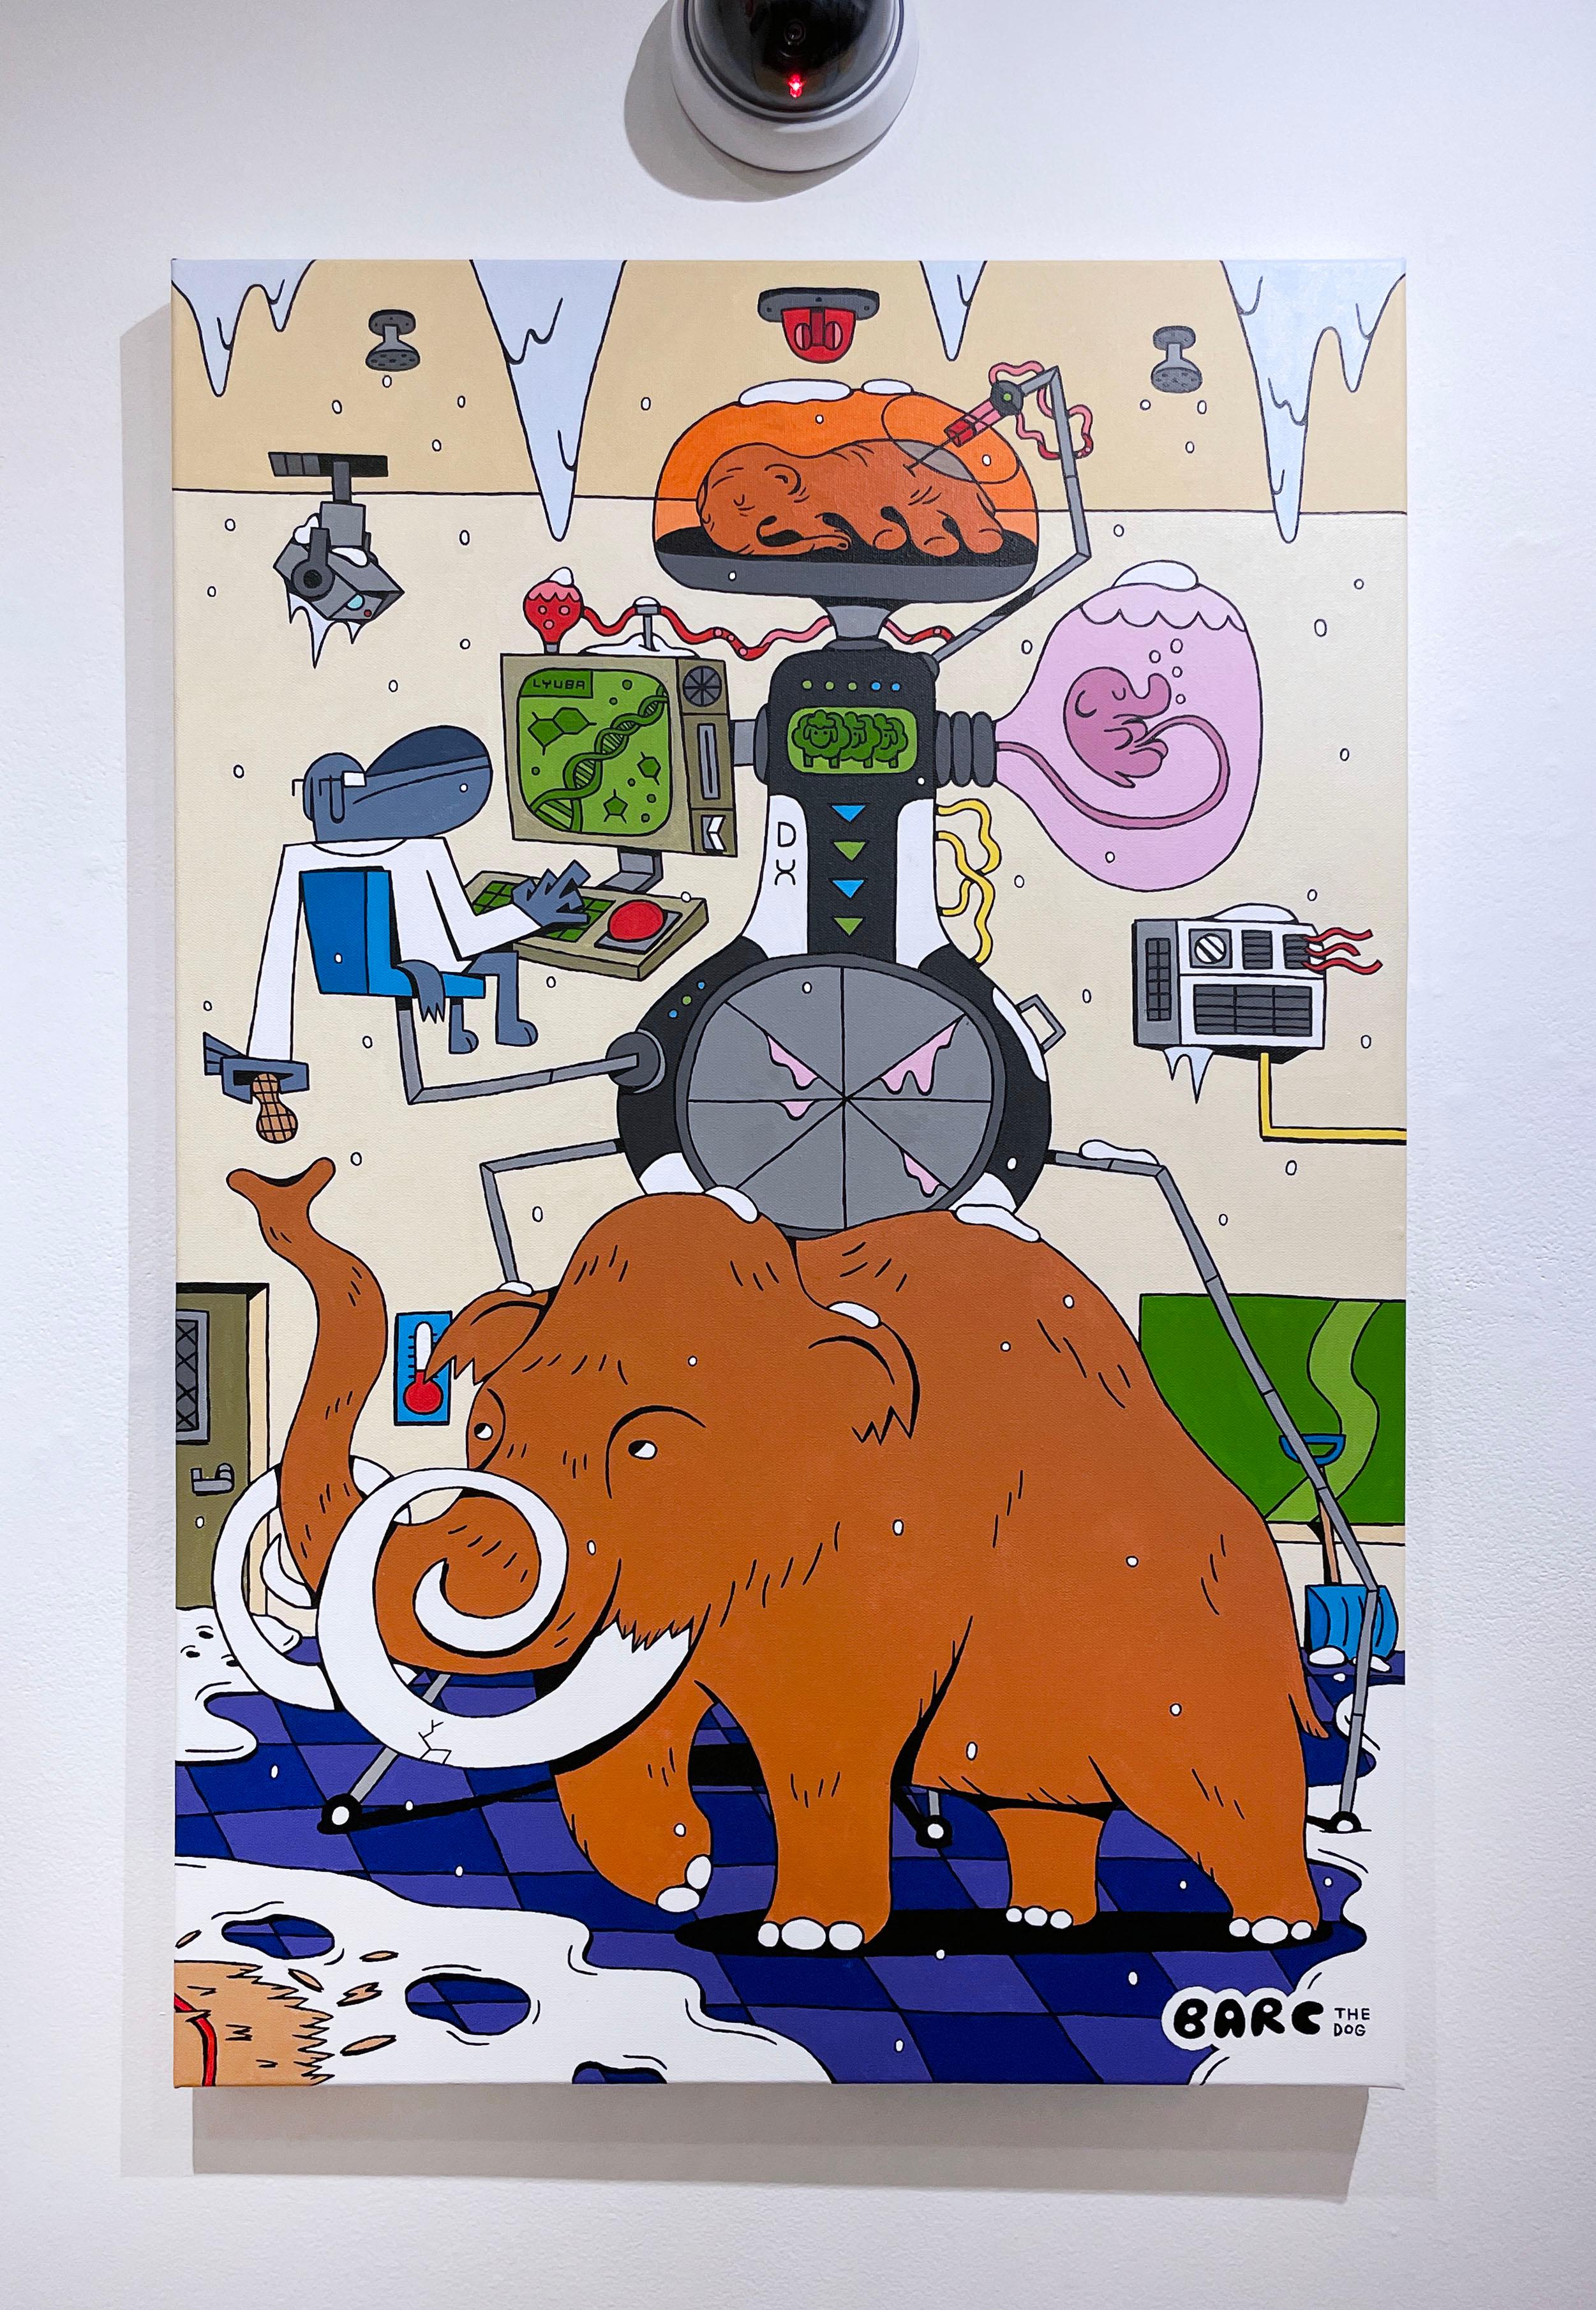 De-Extinctionizer (Lyuba) von BARC, der Hund, im Comic-Stil, Wollmütterchen (Pop-Art), Painting, von BARC the dog